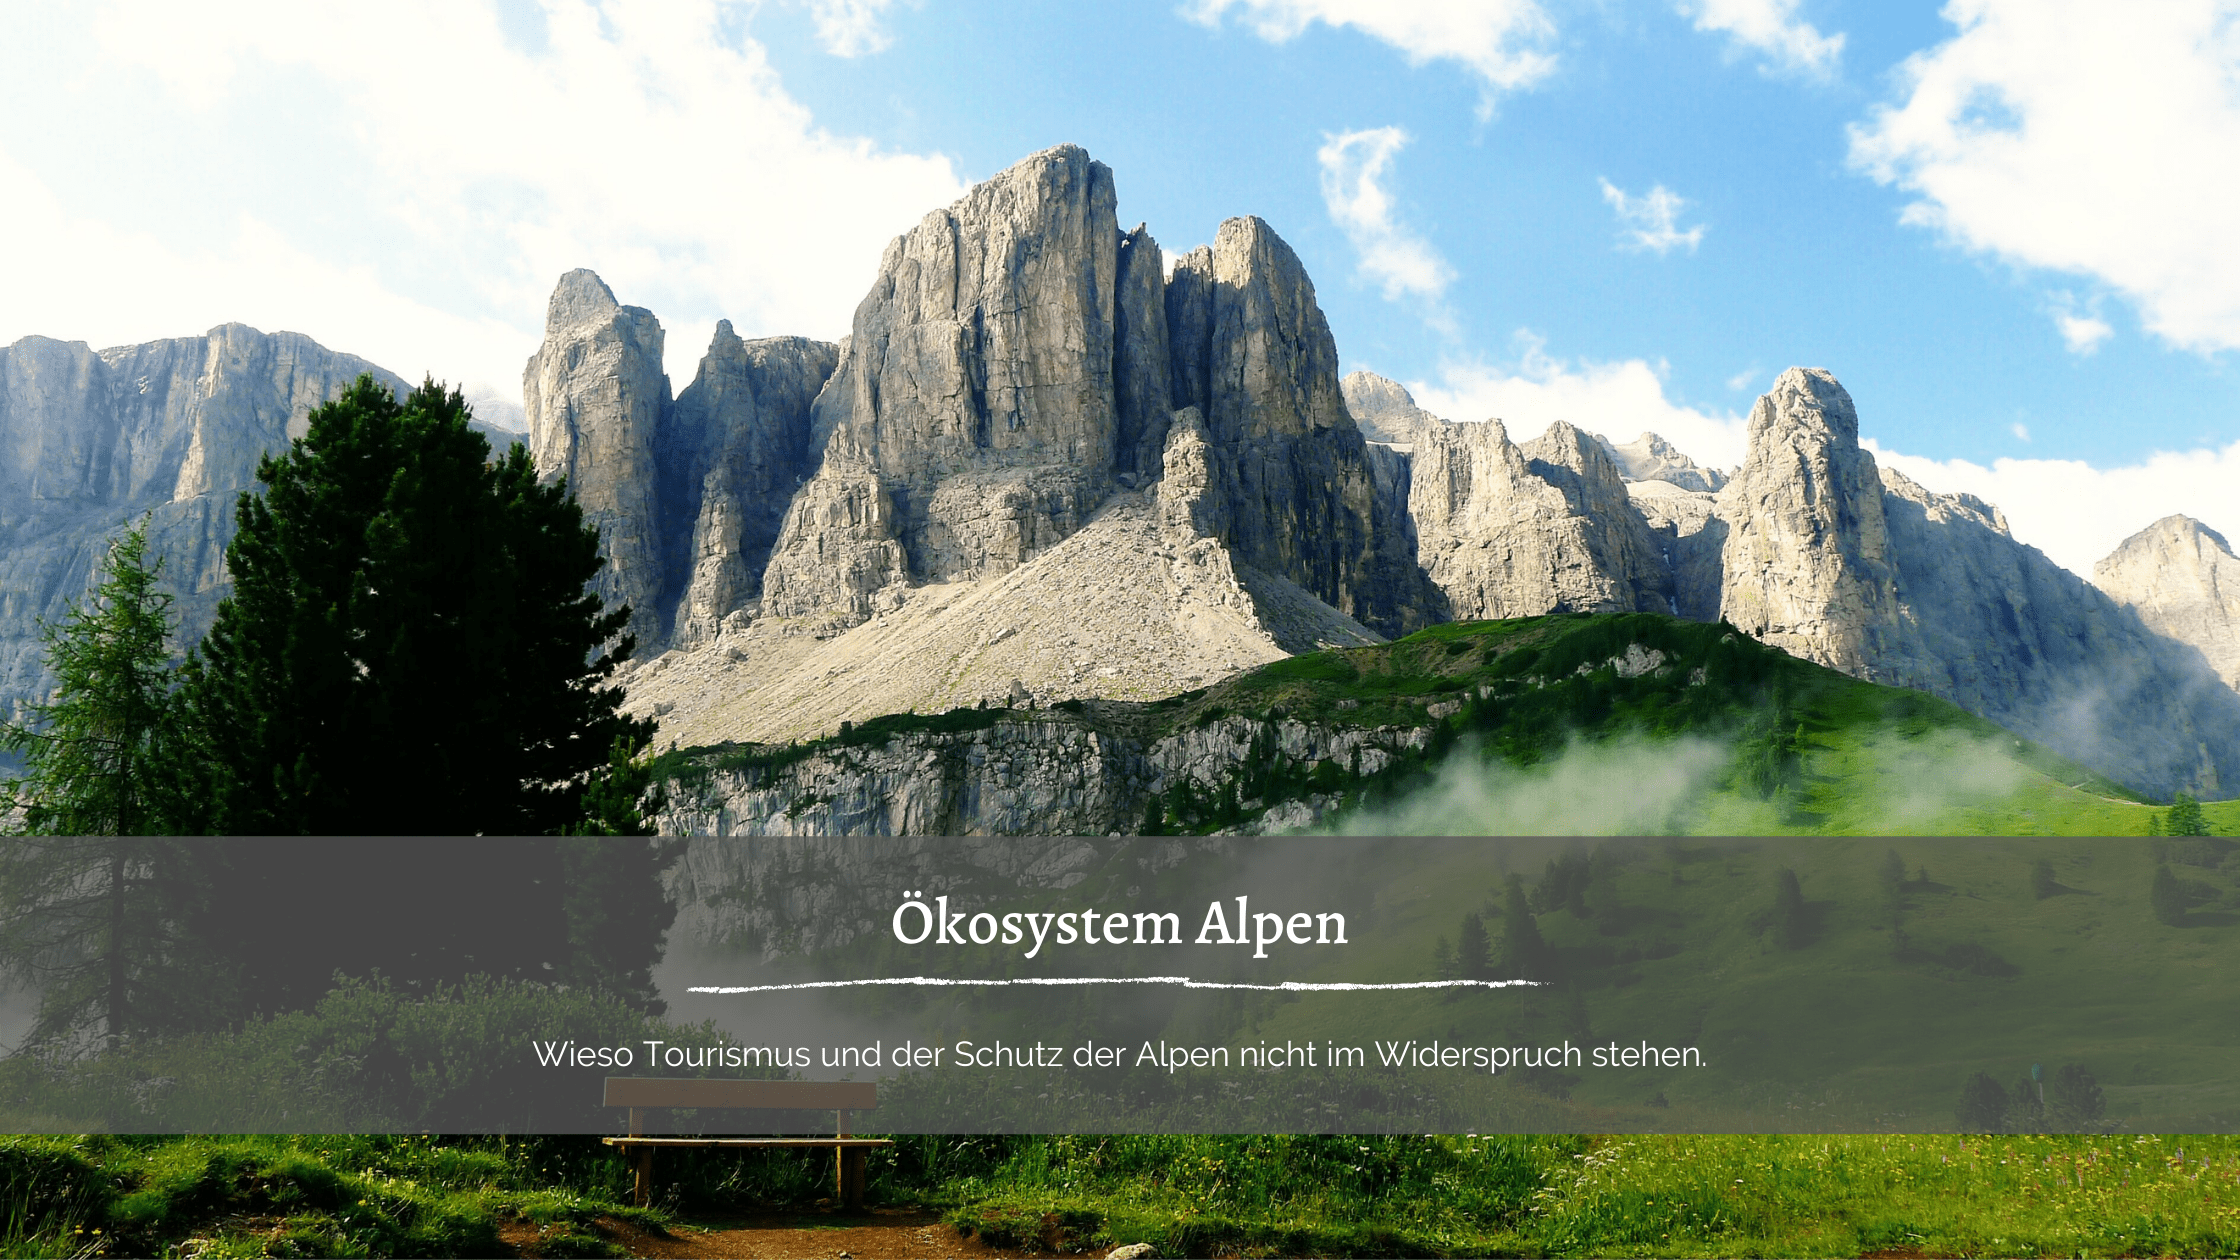 Ökosystem Alpen - Foto von Bergen in den Alpen mit einer Wiese und einer Bank zum Ausruhen davor.